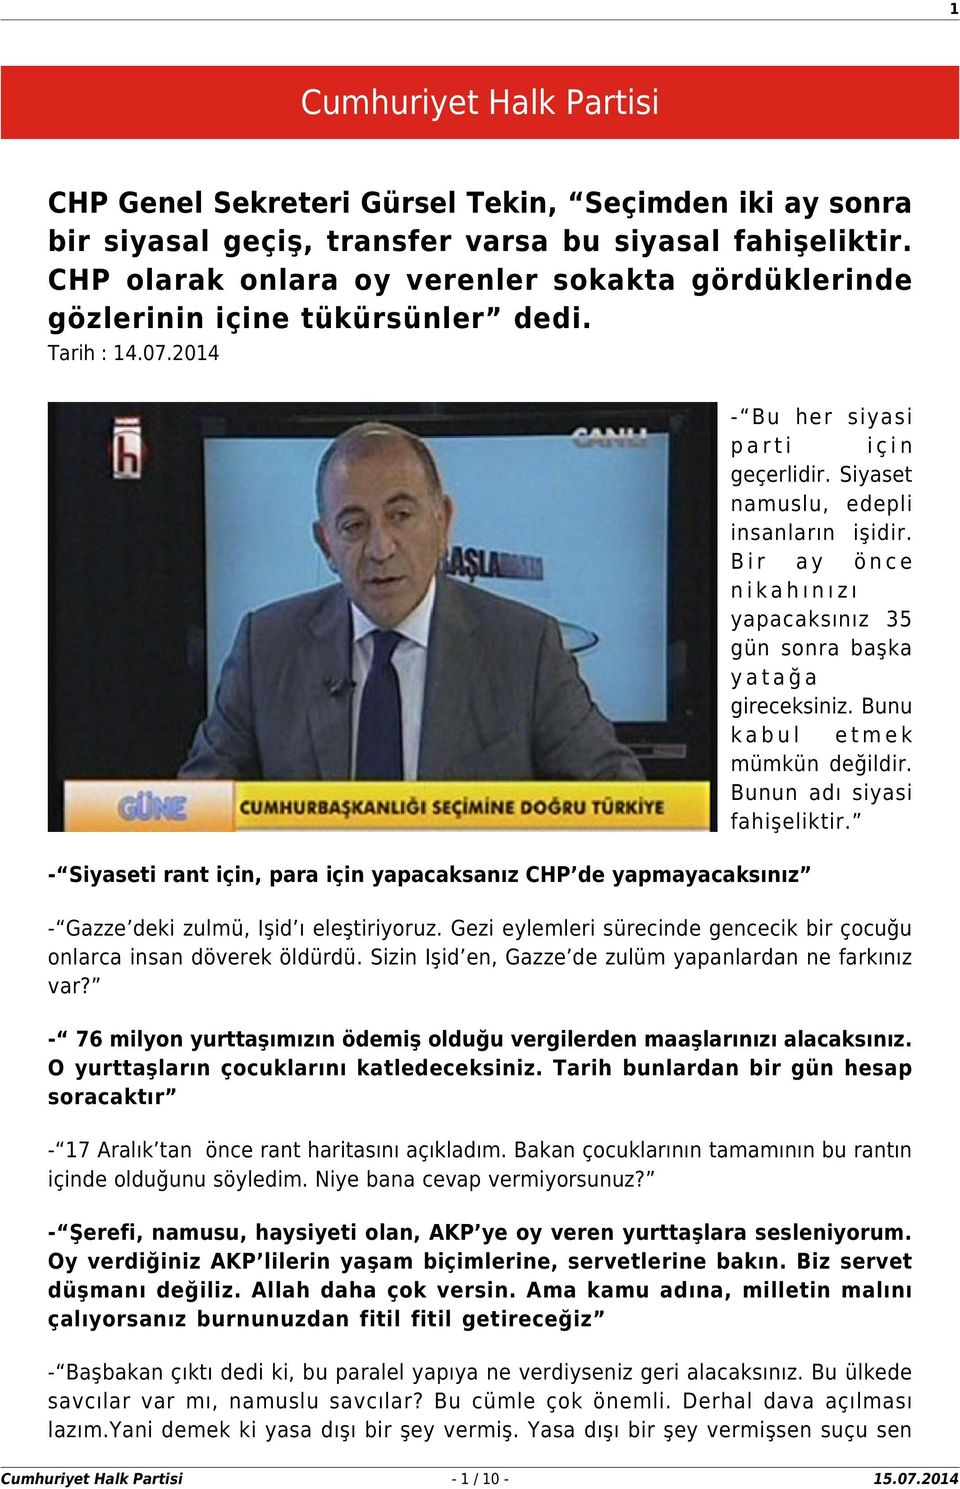 2014 - Siyaseti rant için, para için yapacaksanız CHP de yapmayacaksınız - Bu her siyasi parti için geçerlidir. Siyaset namuslu, edepli insanların işidir.